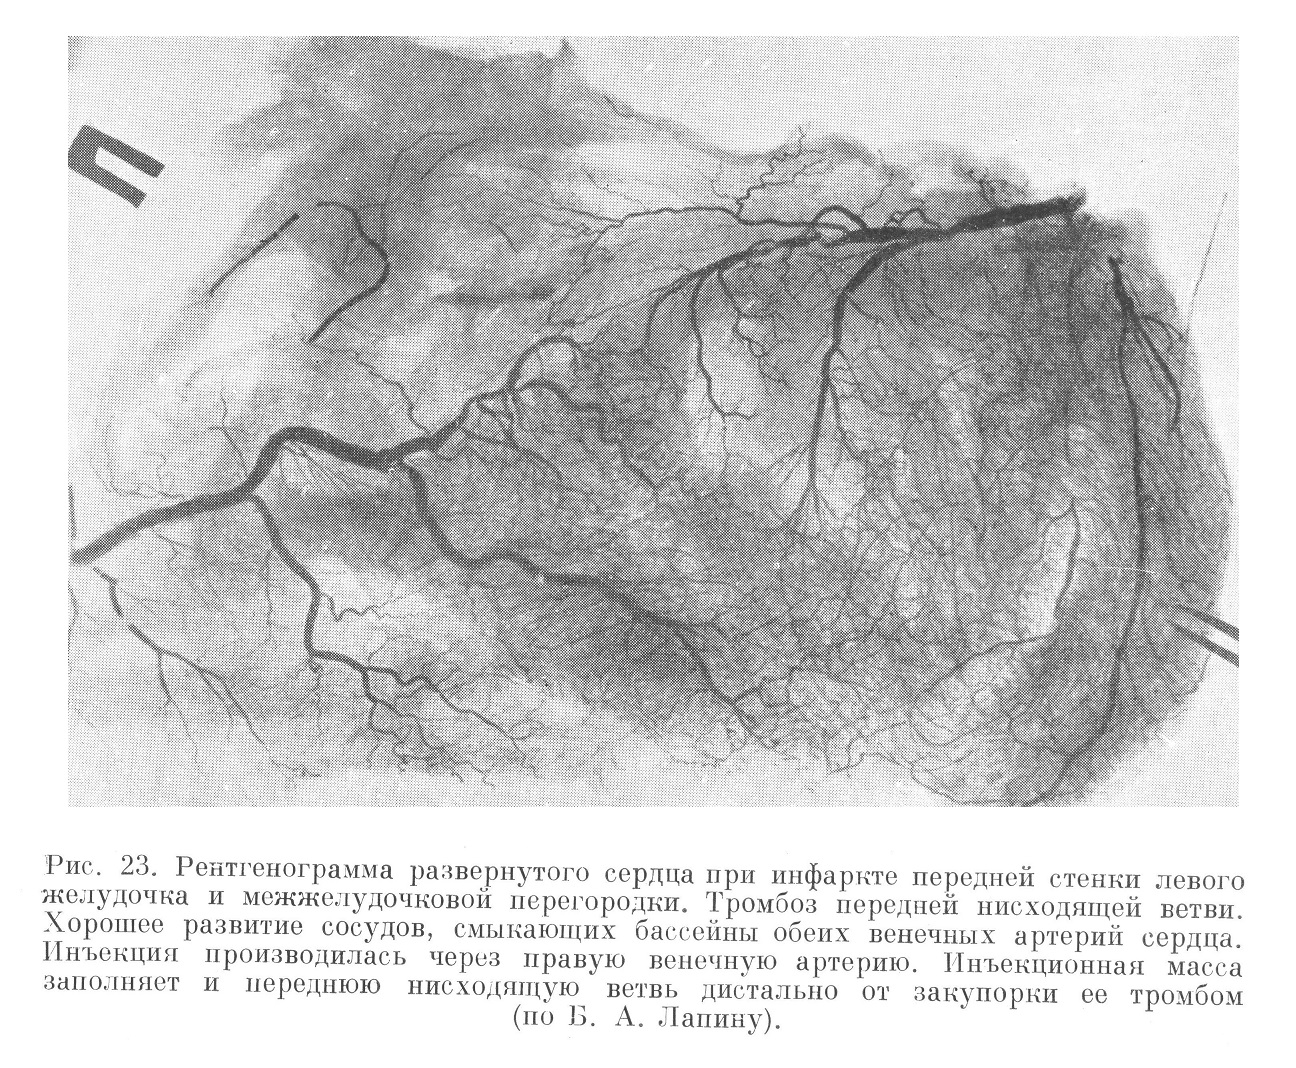 Рентгенография системы венечных артерий сердца